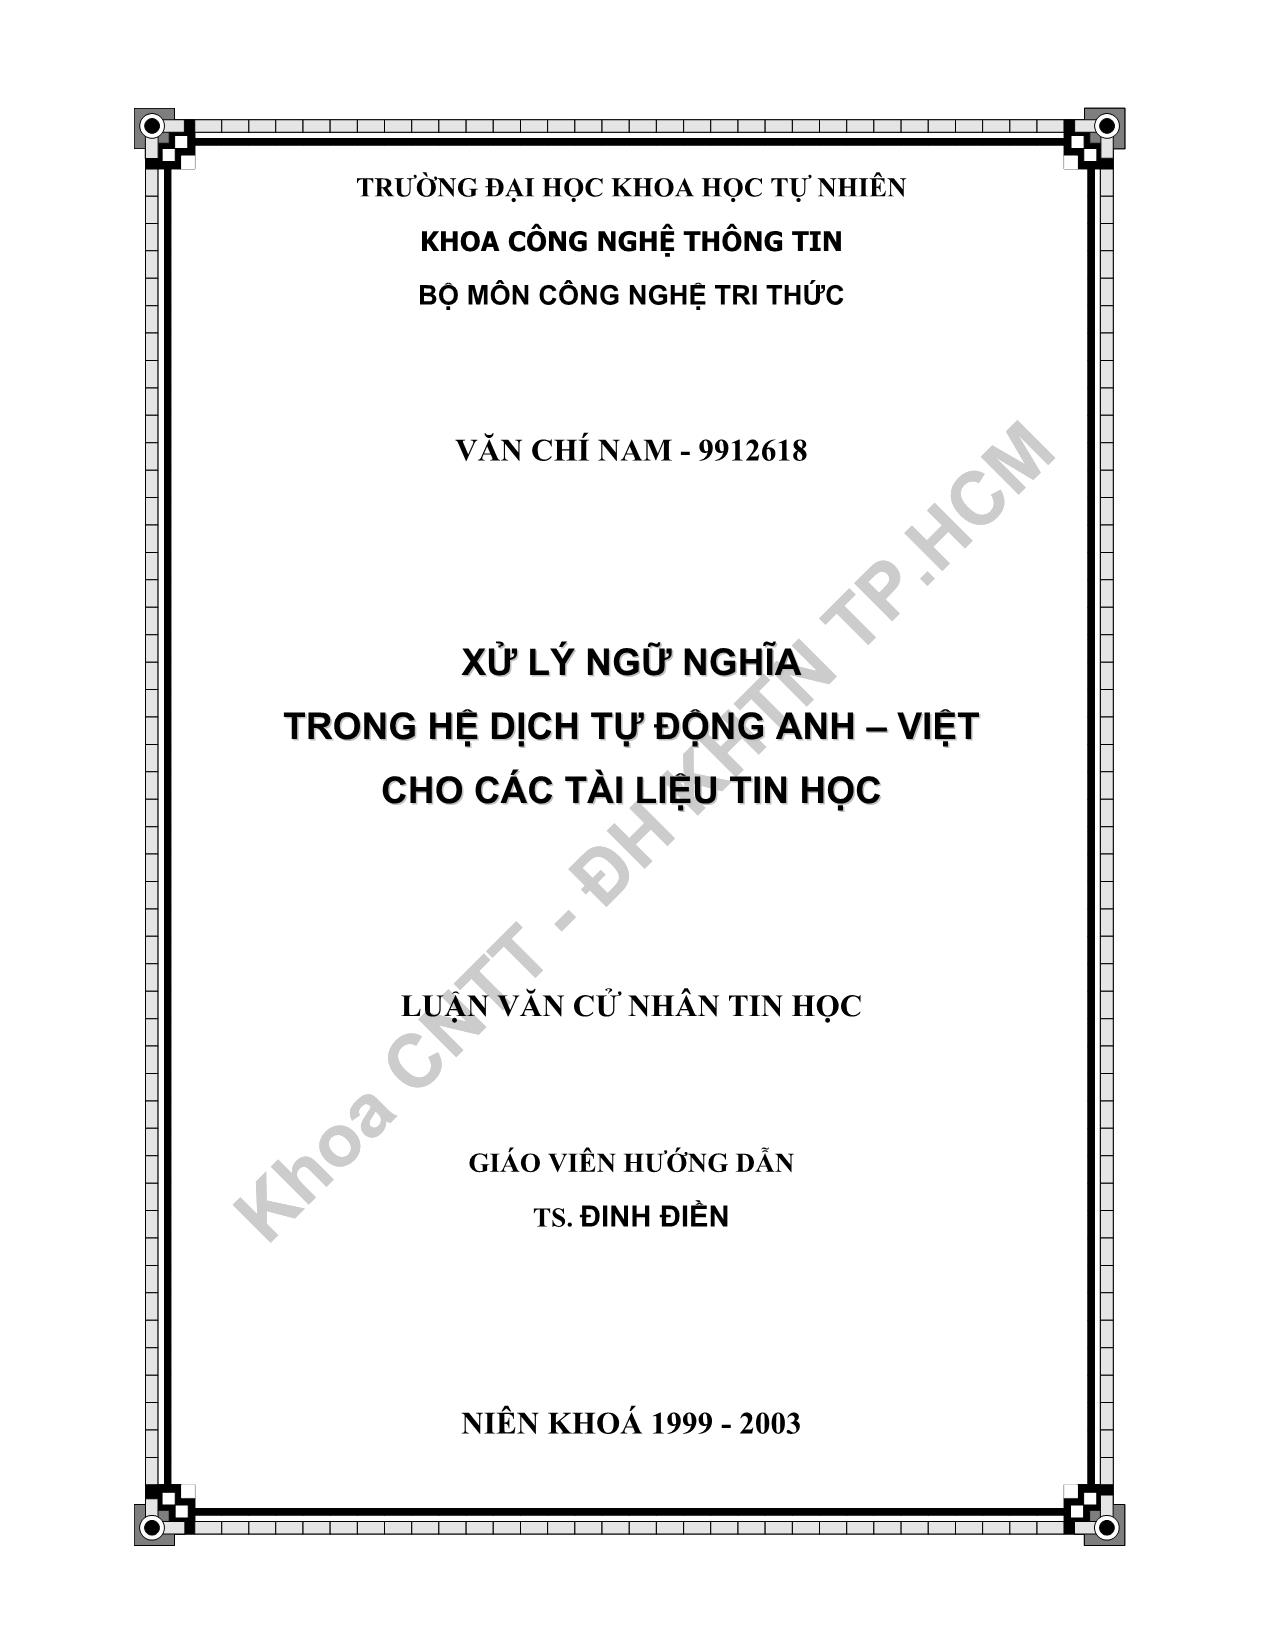 Luận văn Xử lý ngữ nghĩa trong hệ dịch tự động Anh - Việt cho các tài liệu tin học trang 2